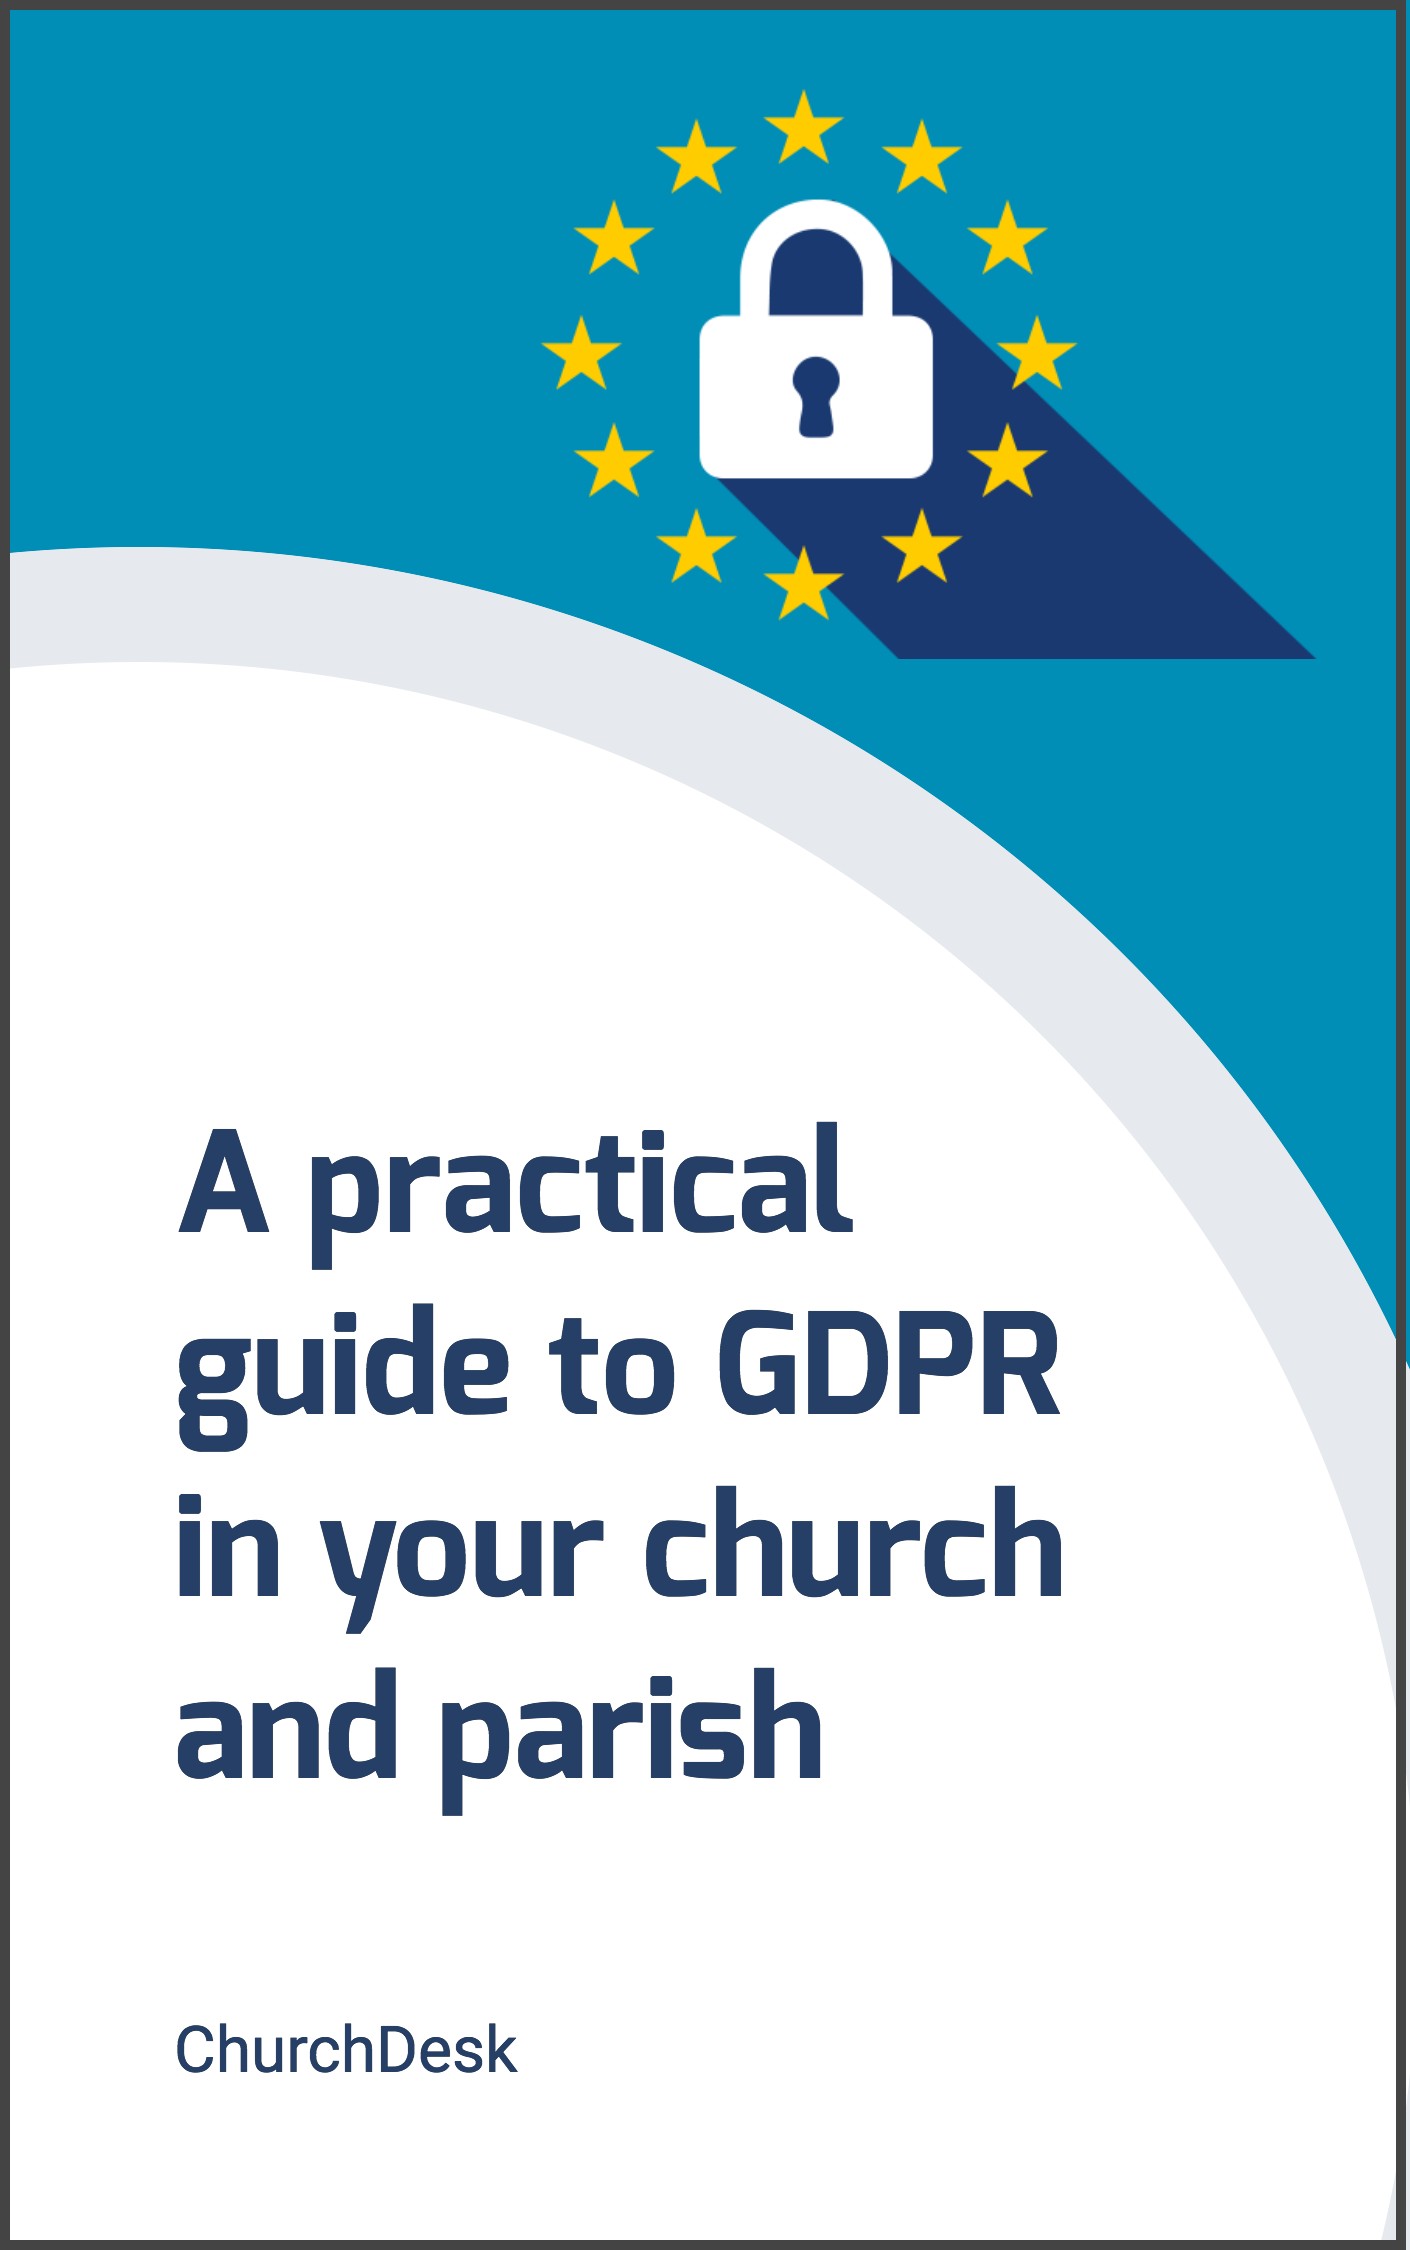 ChurchDesk-GDPR-guide-UK.jpg